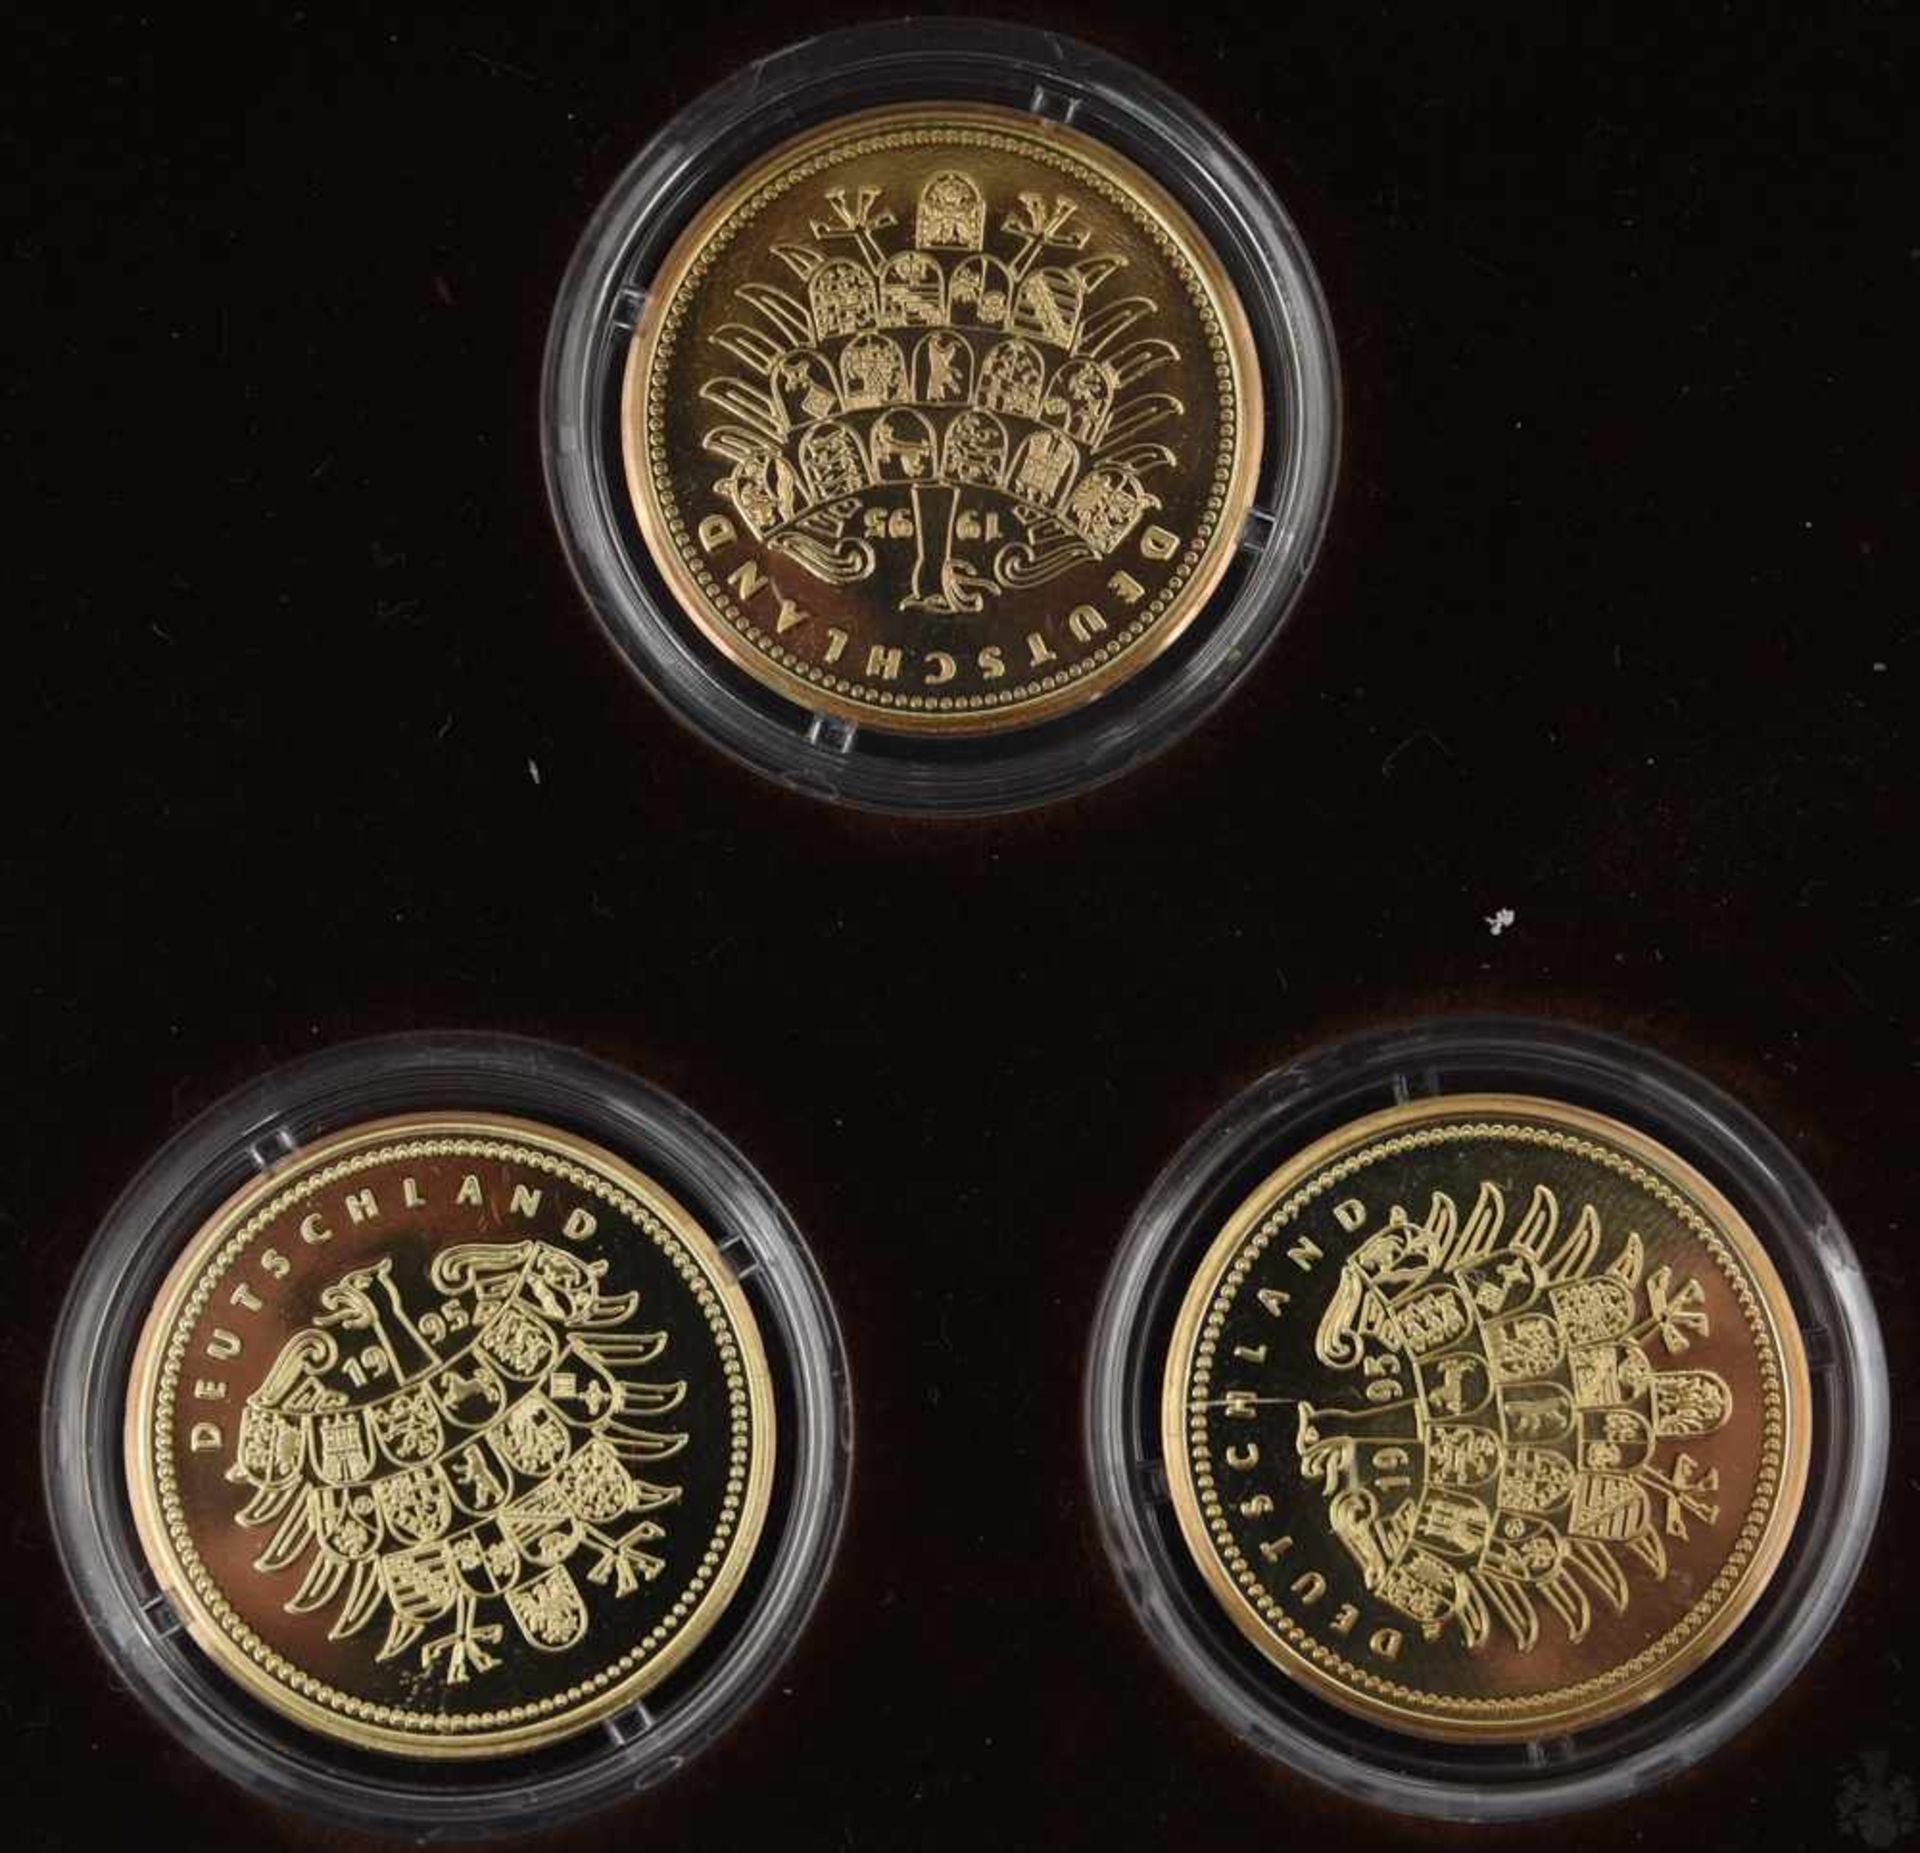 GOLDMÜNZEN, 3 Gedenkmünzen, 14 Karat, Deutschland, 1995 (15)Gedenkmünzen geprägt mit dem - Bild 3 aus 3